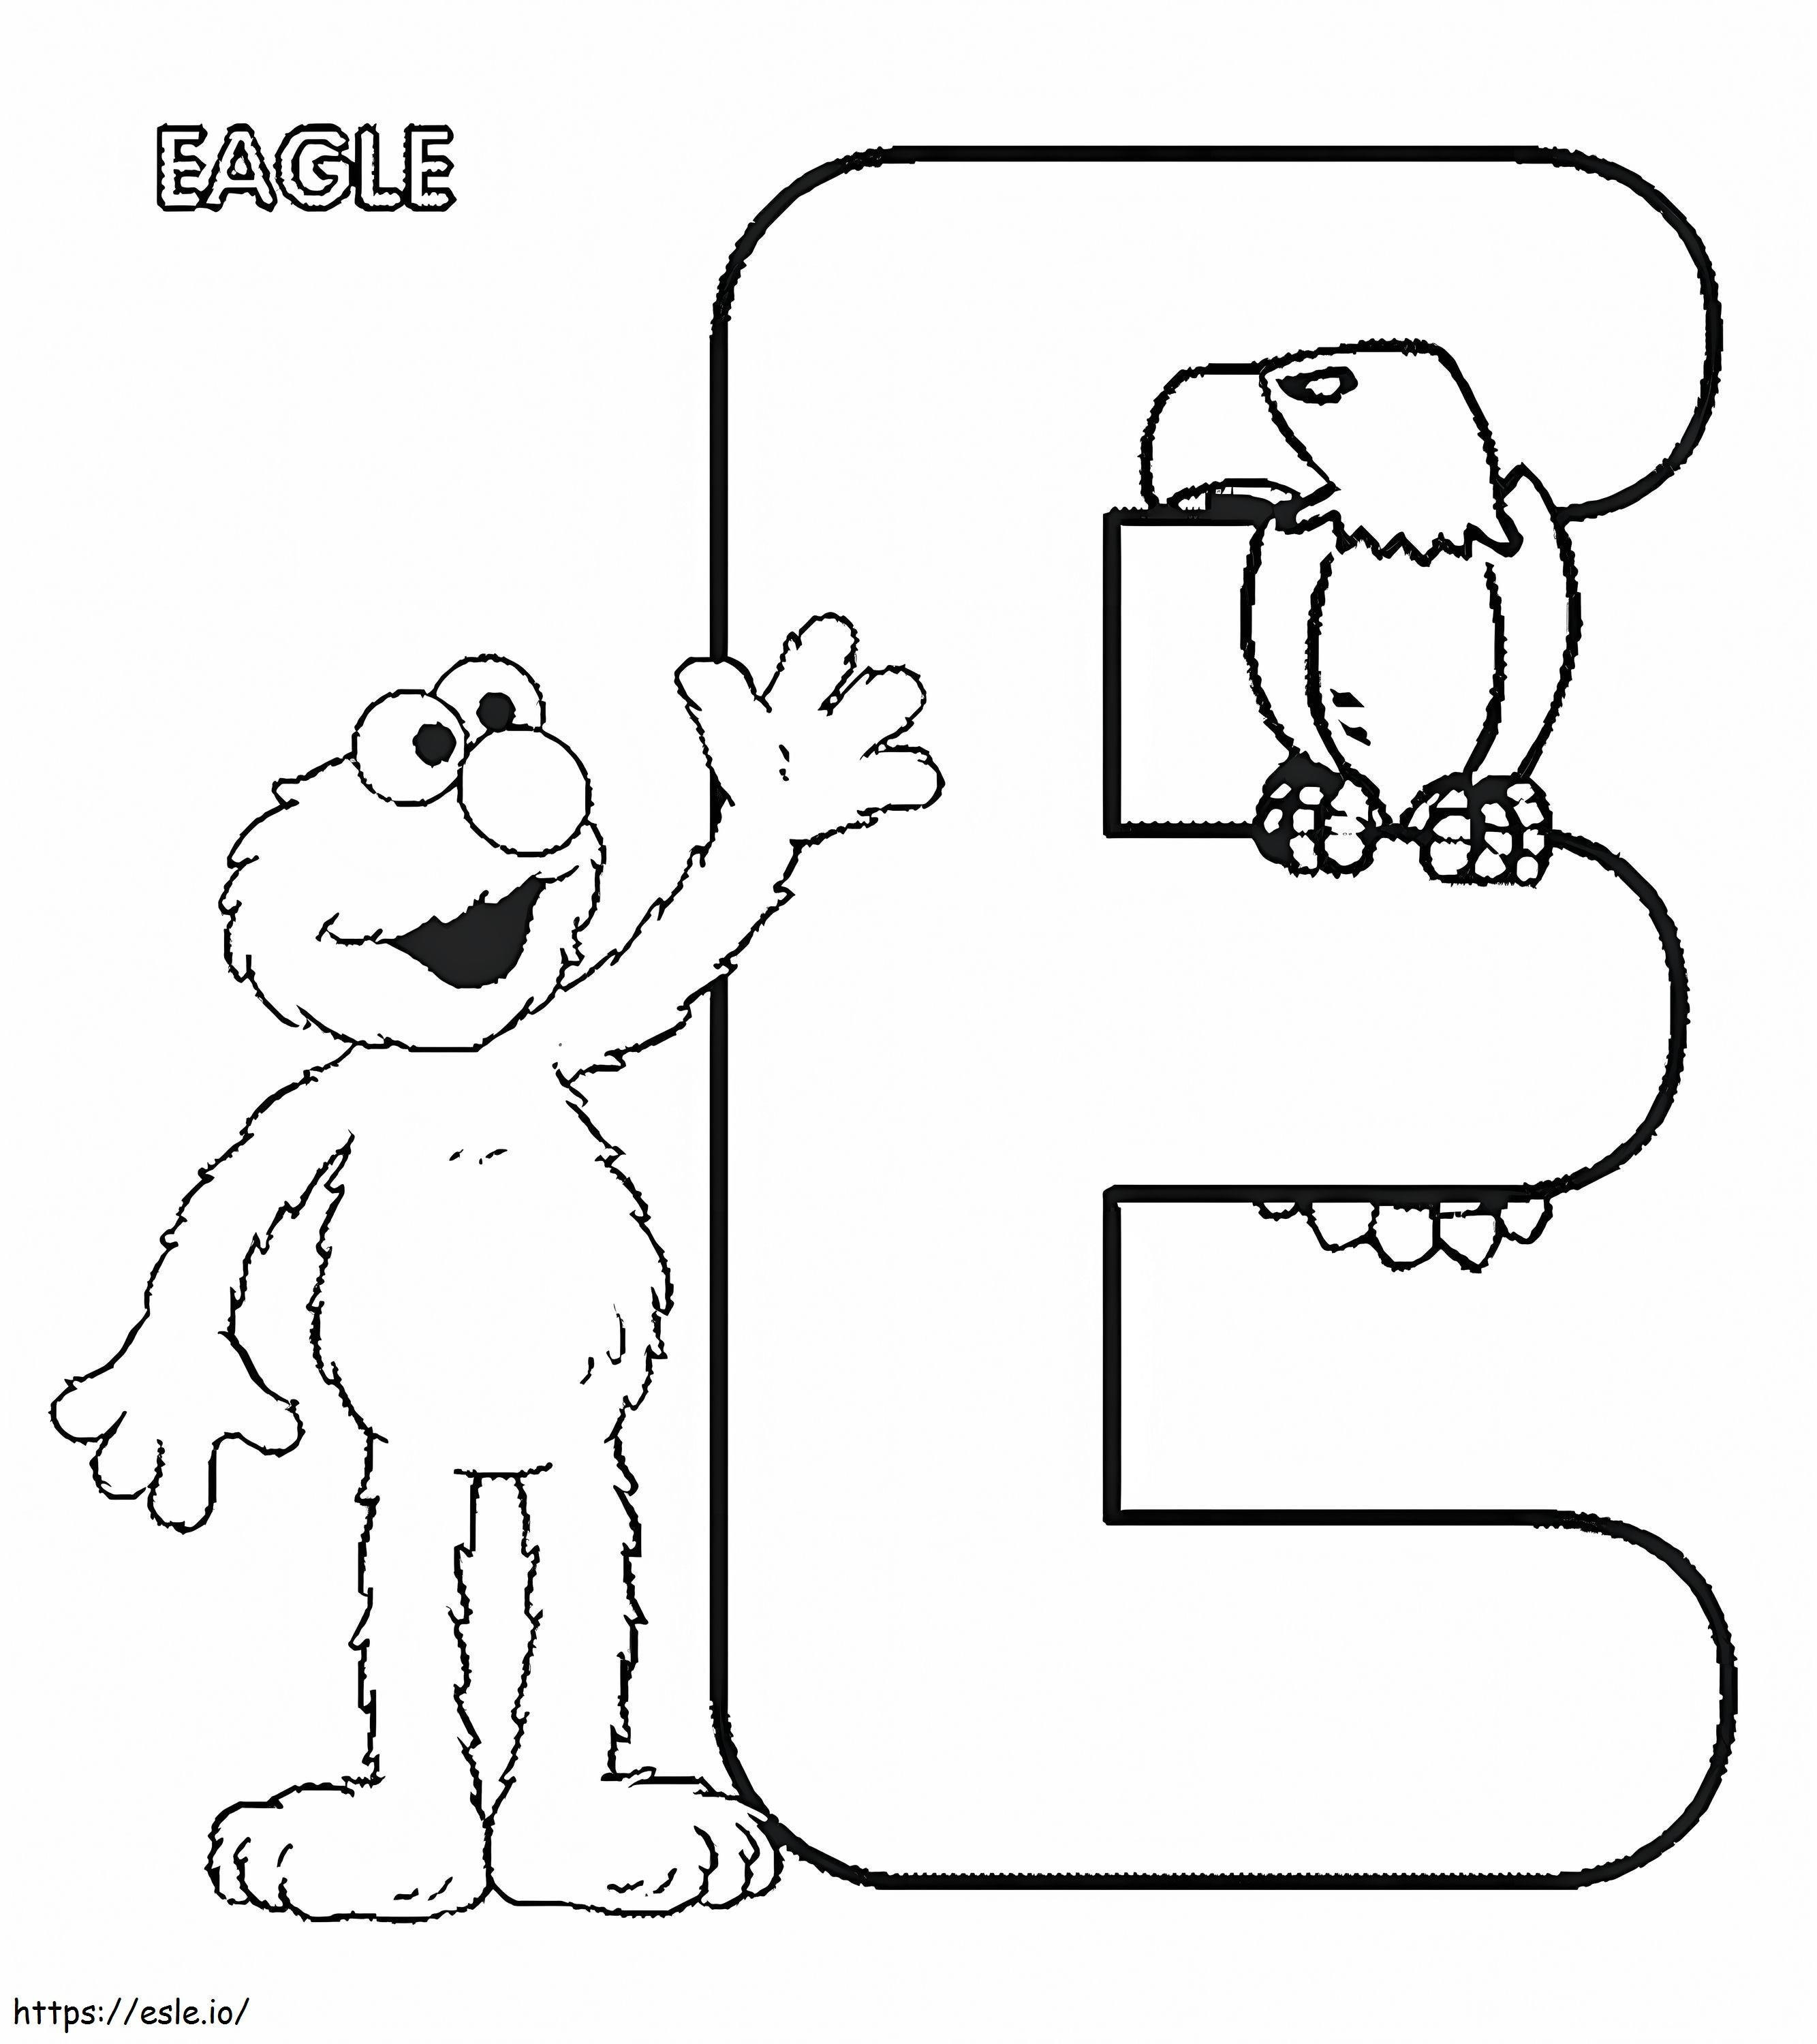 E Für Elmo und Eagle ausmalbilder